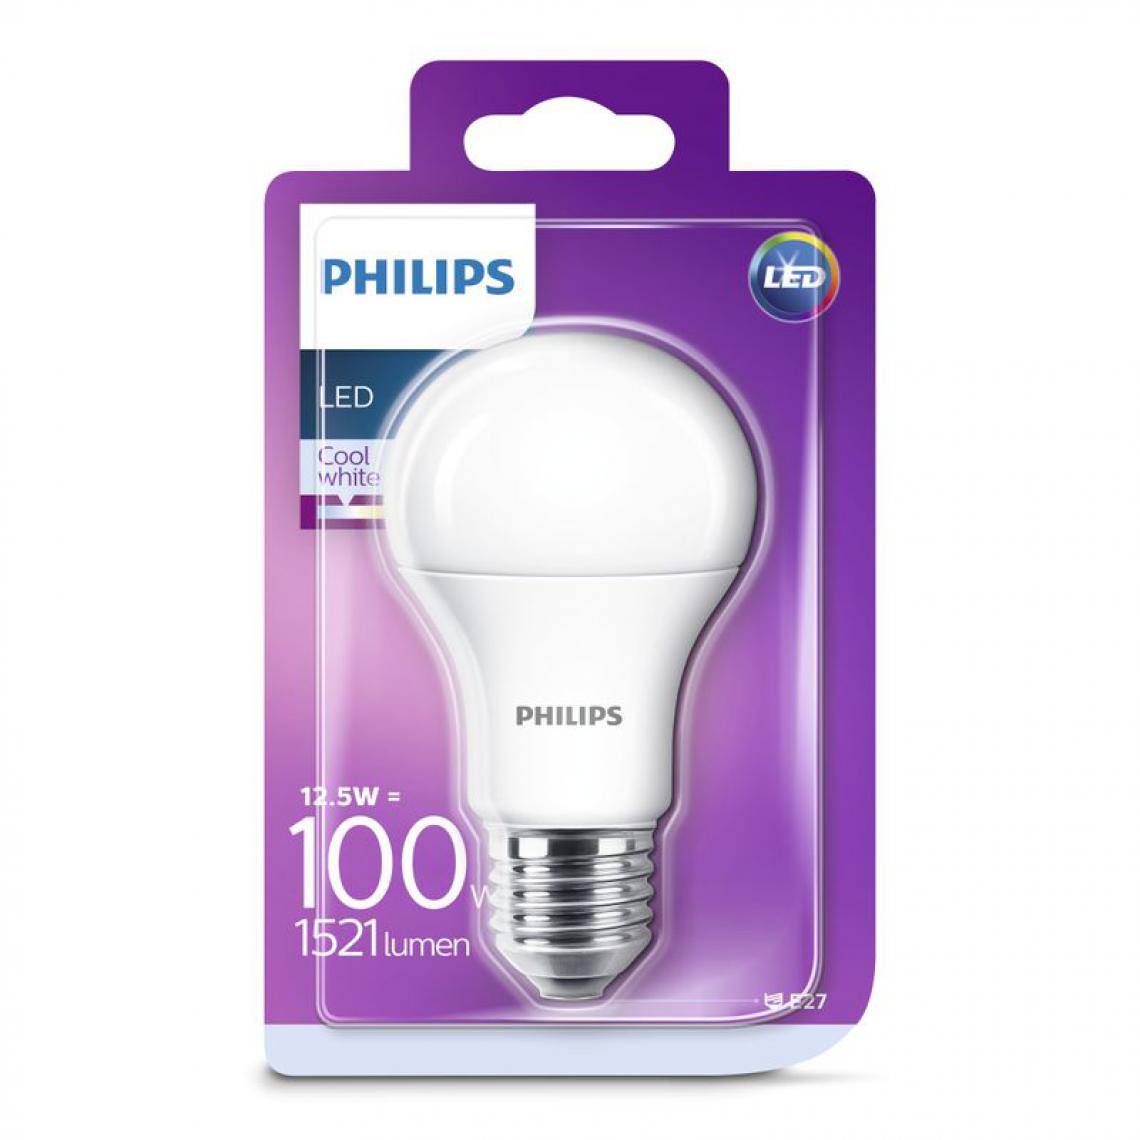 Philips - Ampoule LED 12,5W équiv 100W 1521 lm E27 Blanc froid - Ampoules LED